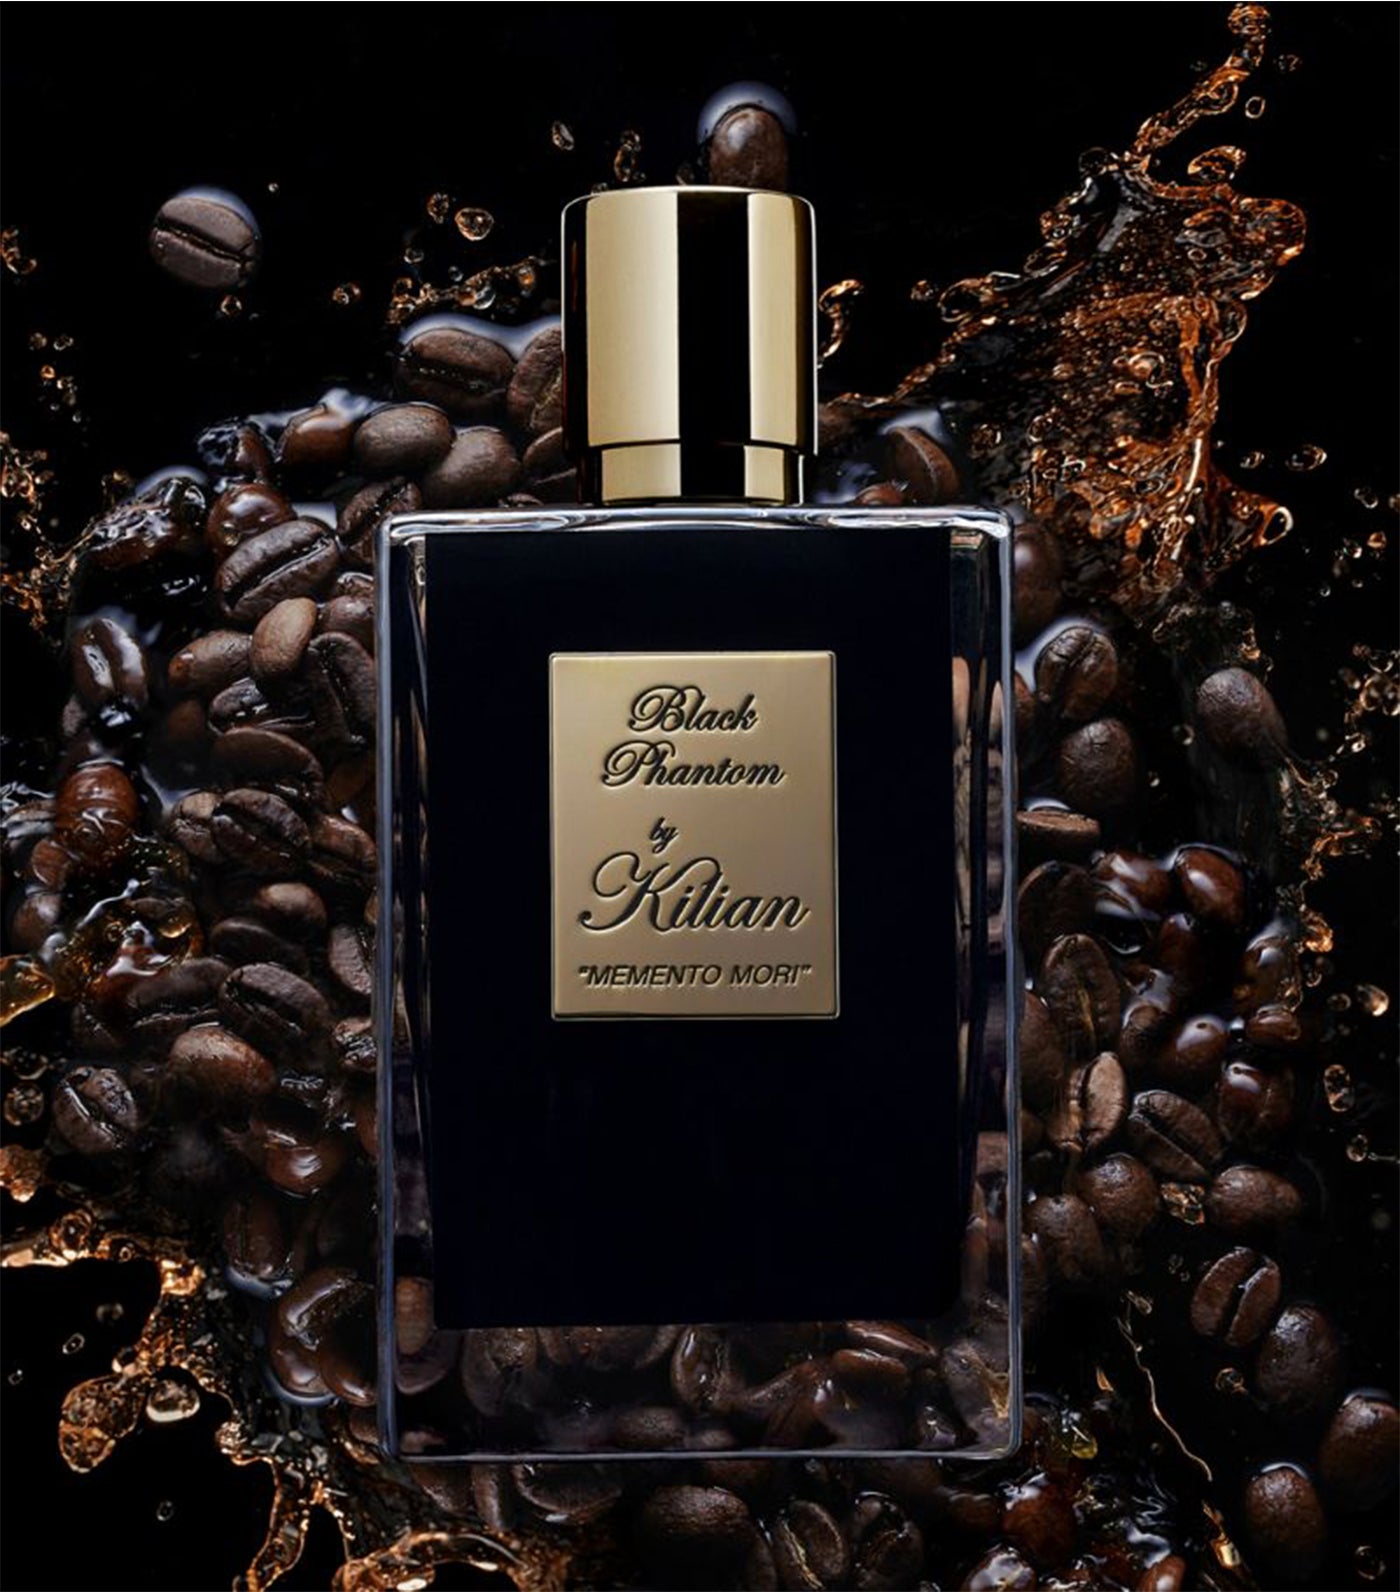 Kilian Paris Black Phantom - "Memento Mori" Eau de Parfum